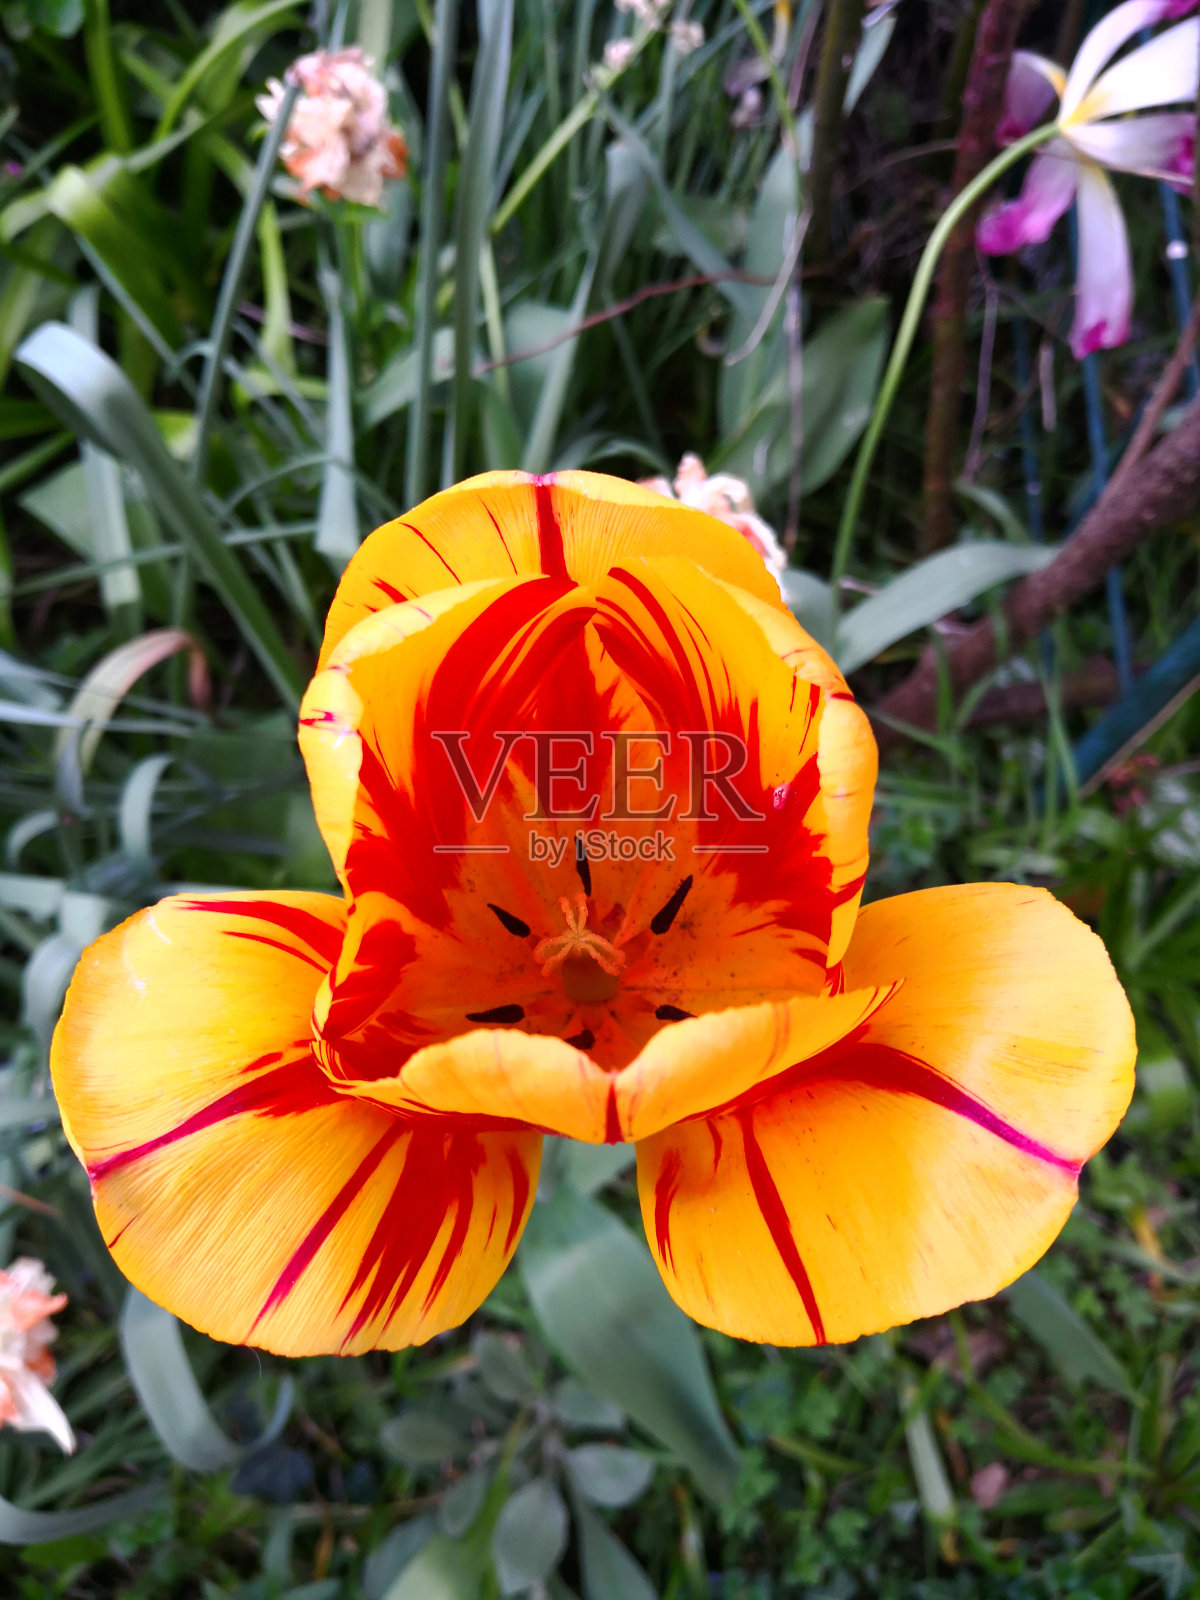 明亮的斑马郁金香(黄色带有红色条纹和鲜红色的心)，两个花瓣稍微向下倾斜，形成三角形的形状照片摄影图片